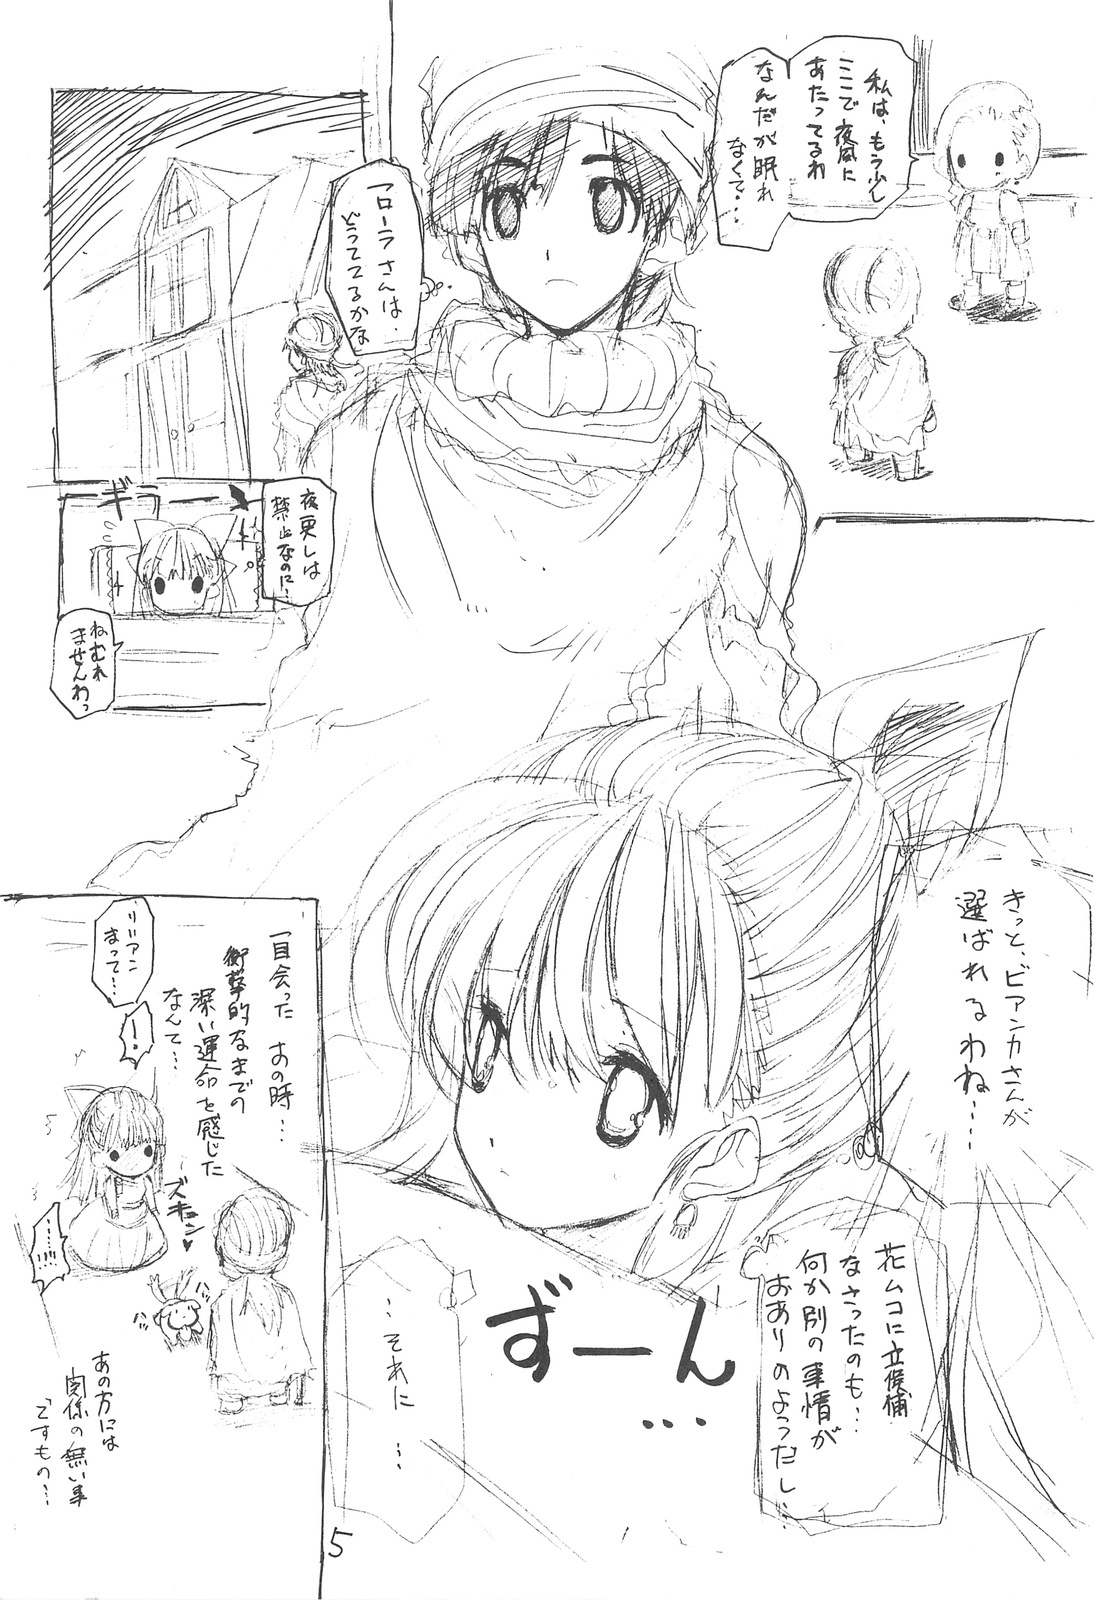 (Mimiket 20) [ZINZIN (Hagure Metal)] DRAGON REQUEST Vol. 12 (Dragon Quest V) page 4 full